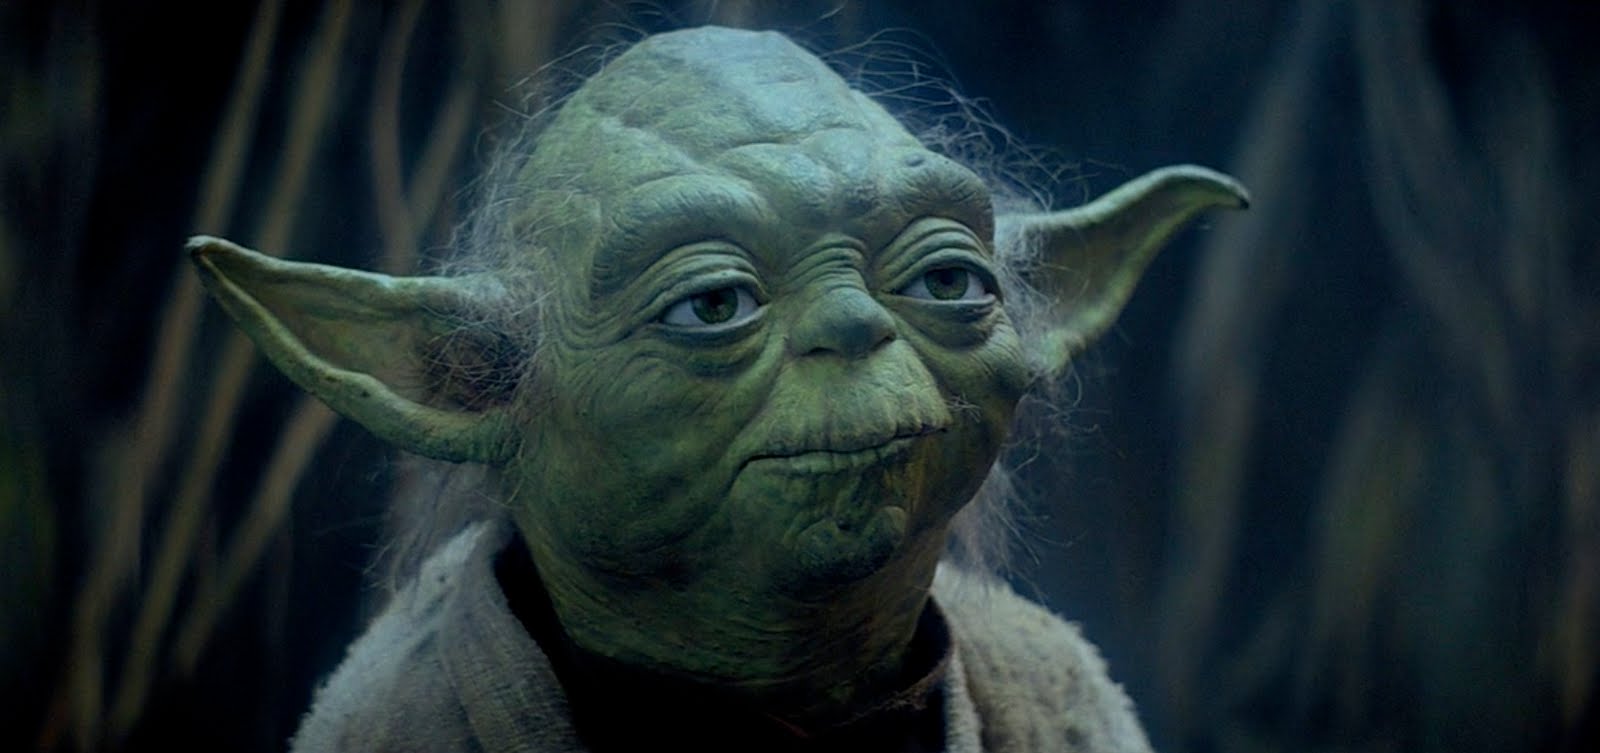 Yoda nhìn về phía trước trong một cảnh trong Star Wars: Episode V - The Empire Strikes Back